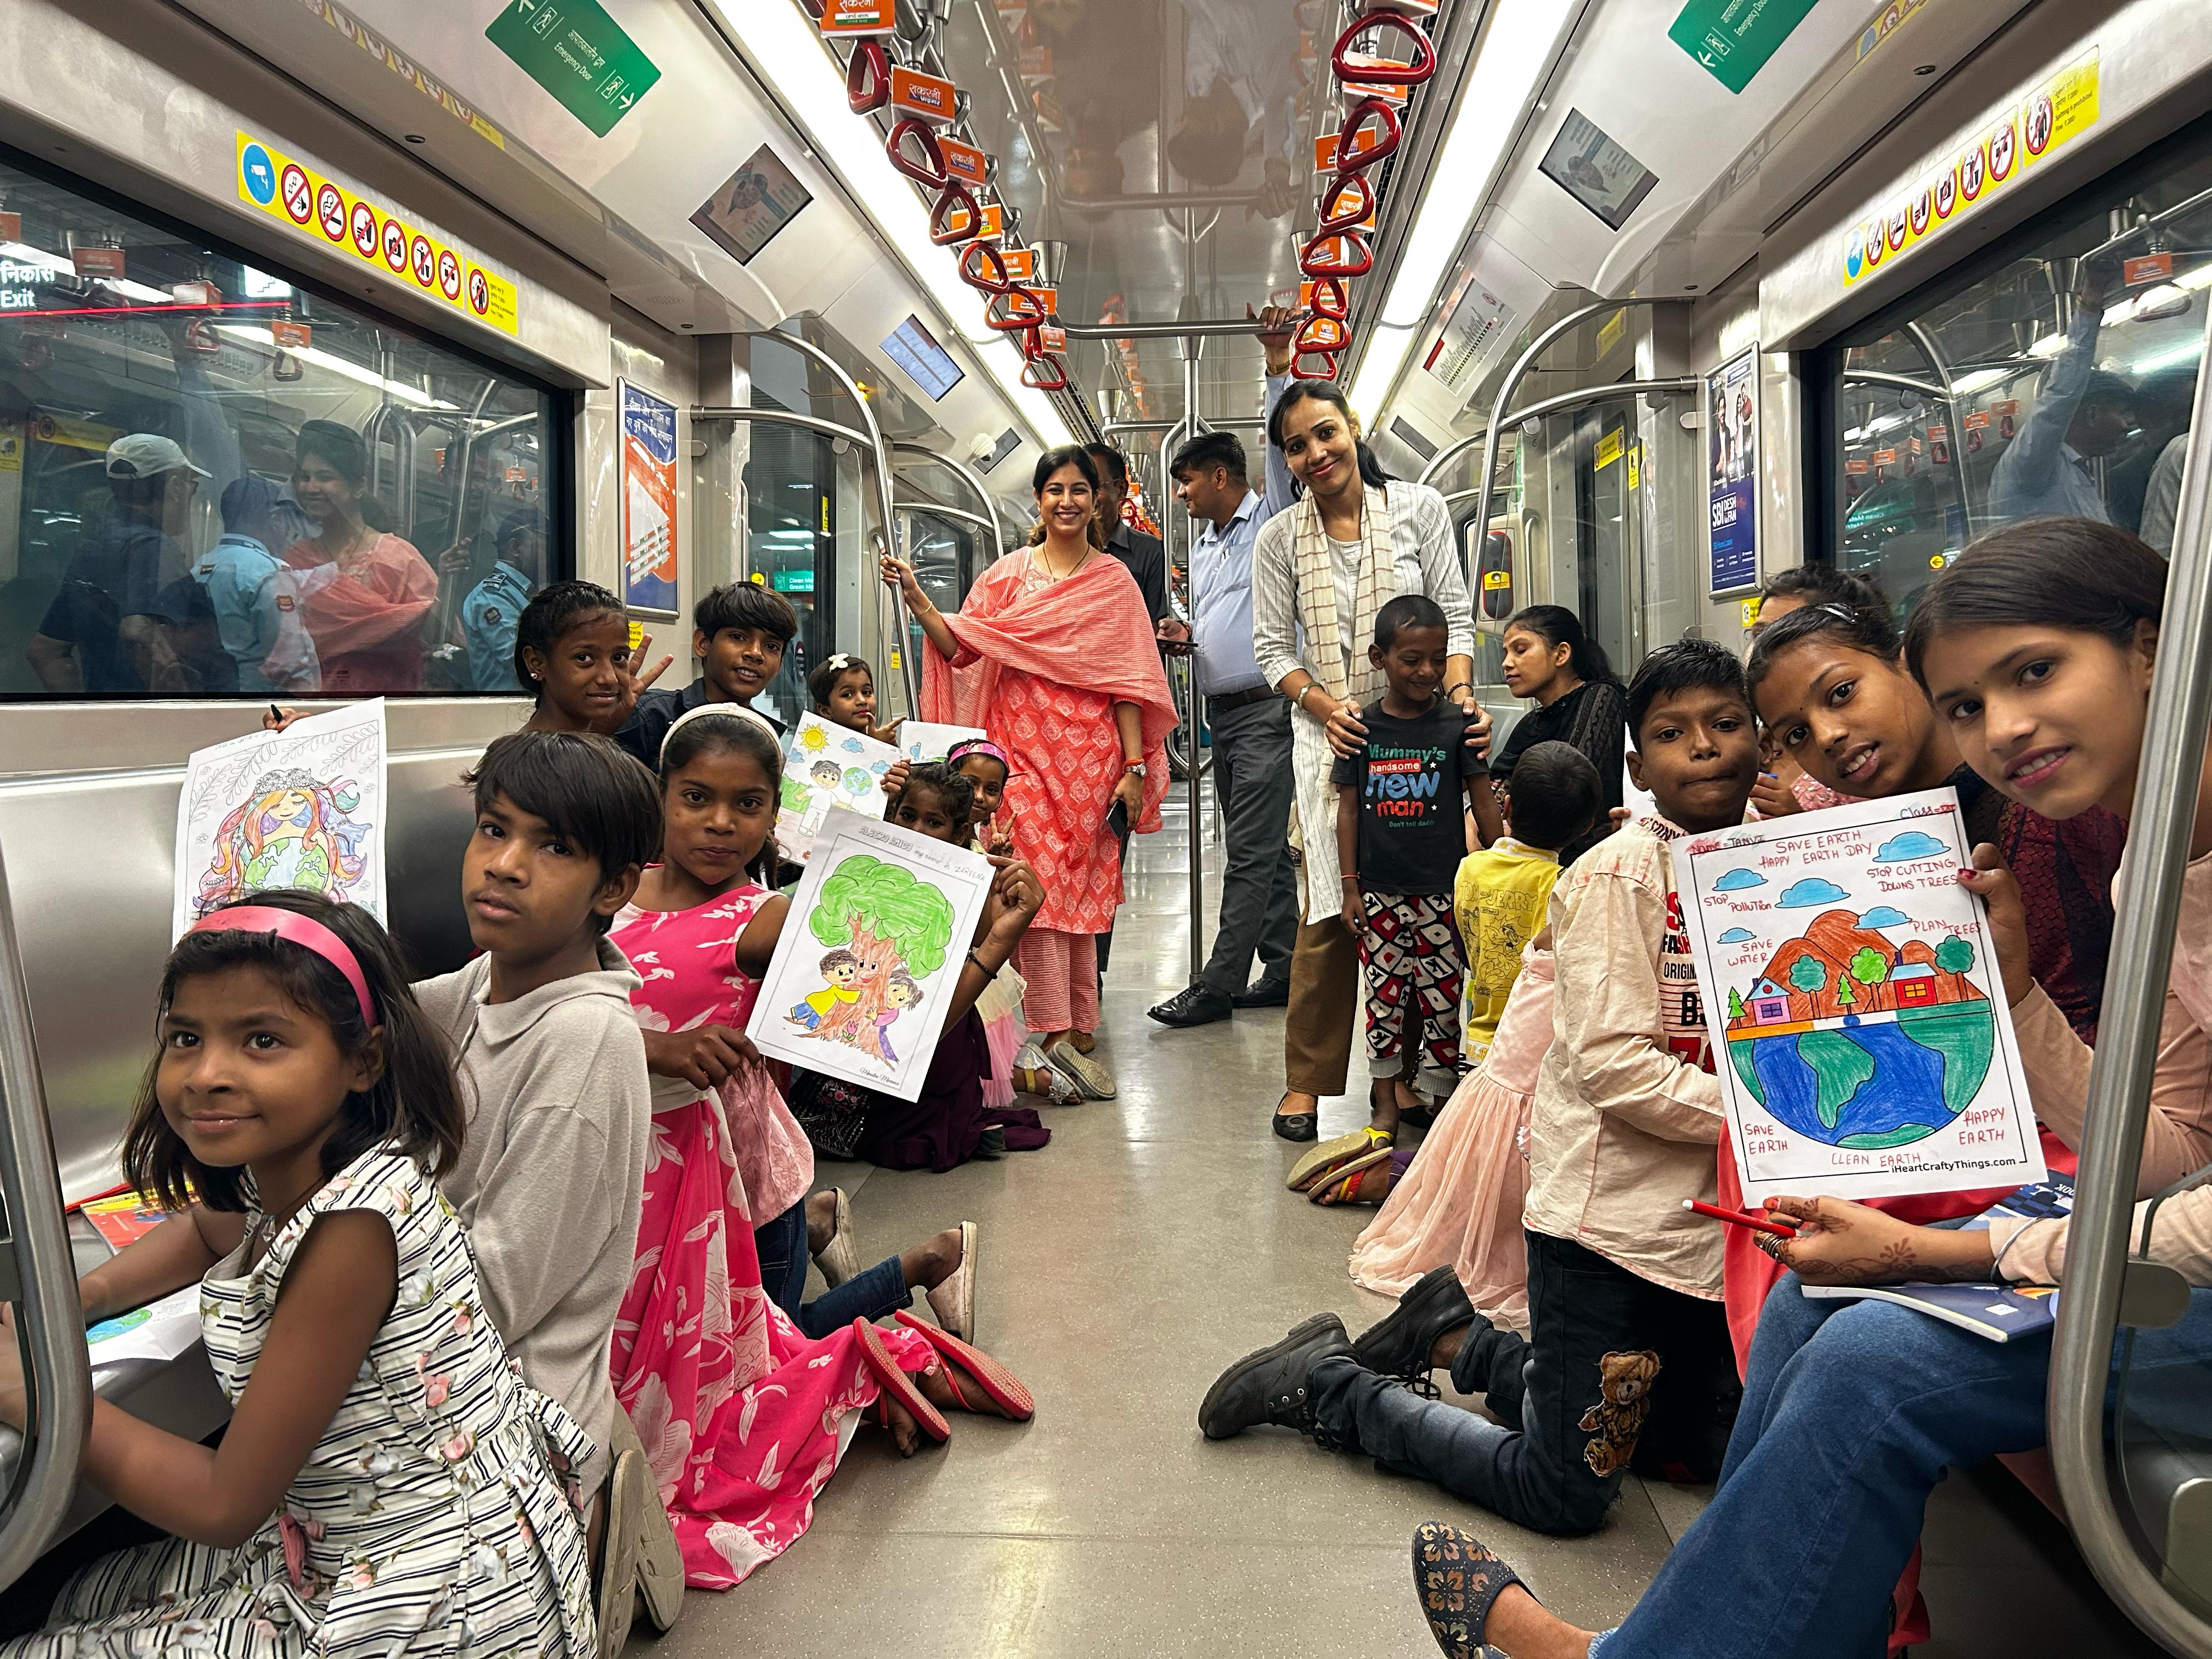 लखनऊ मेट्रो ने चलती ट्रेन में बच्चों संग मनाया “फन ऑन व्हील्स”